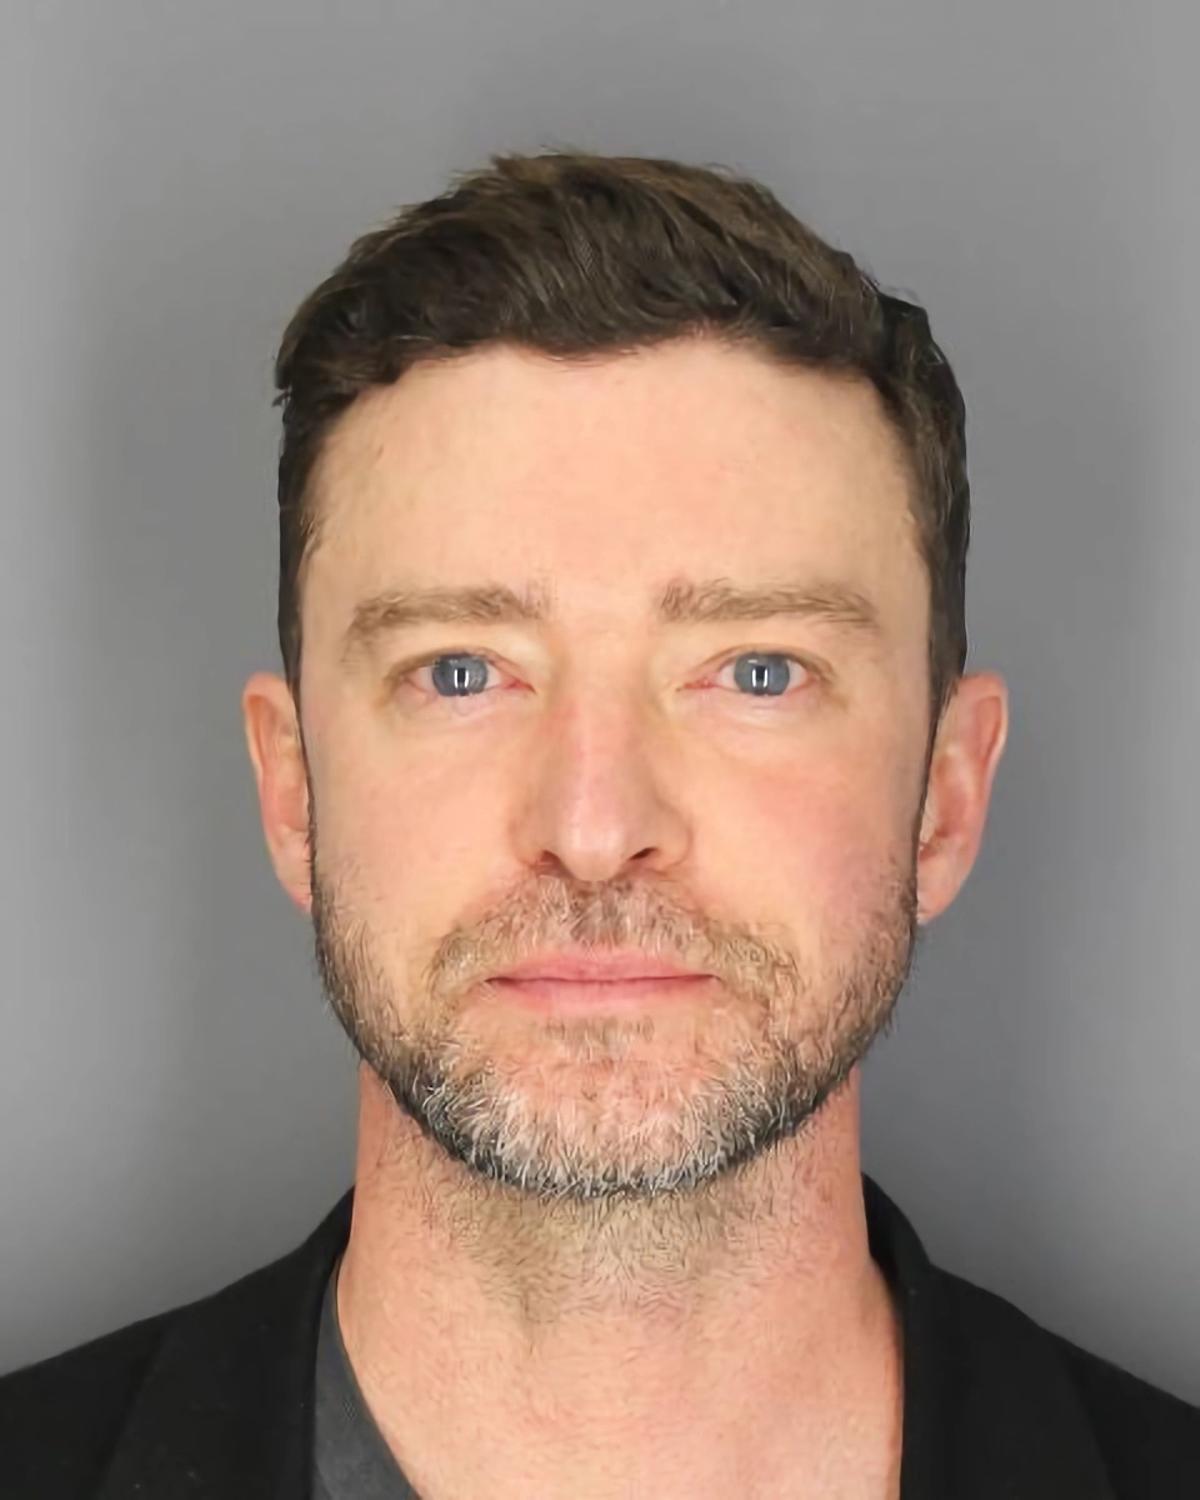 Fotografía de la ficha policial de Justin Timberlake.